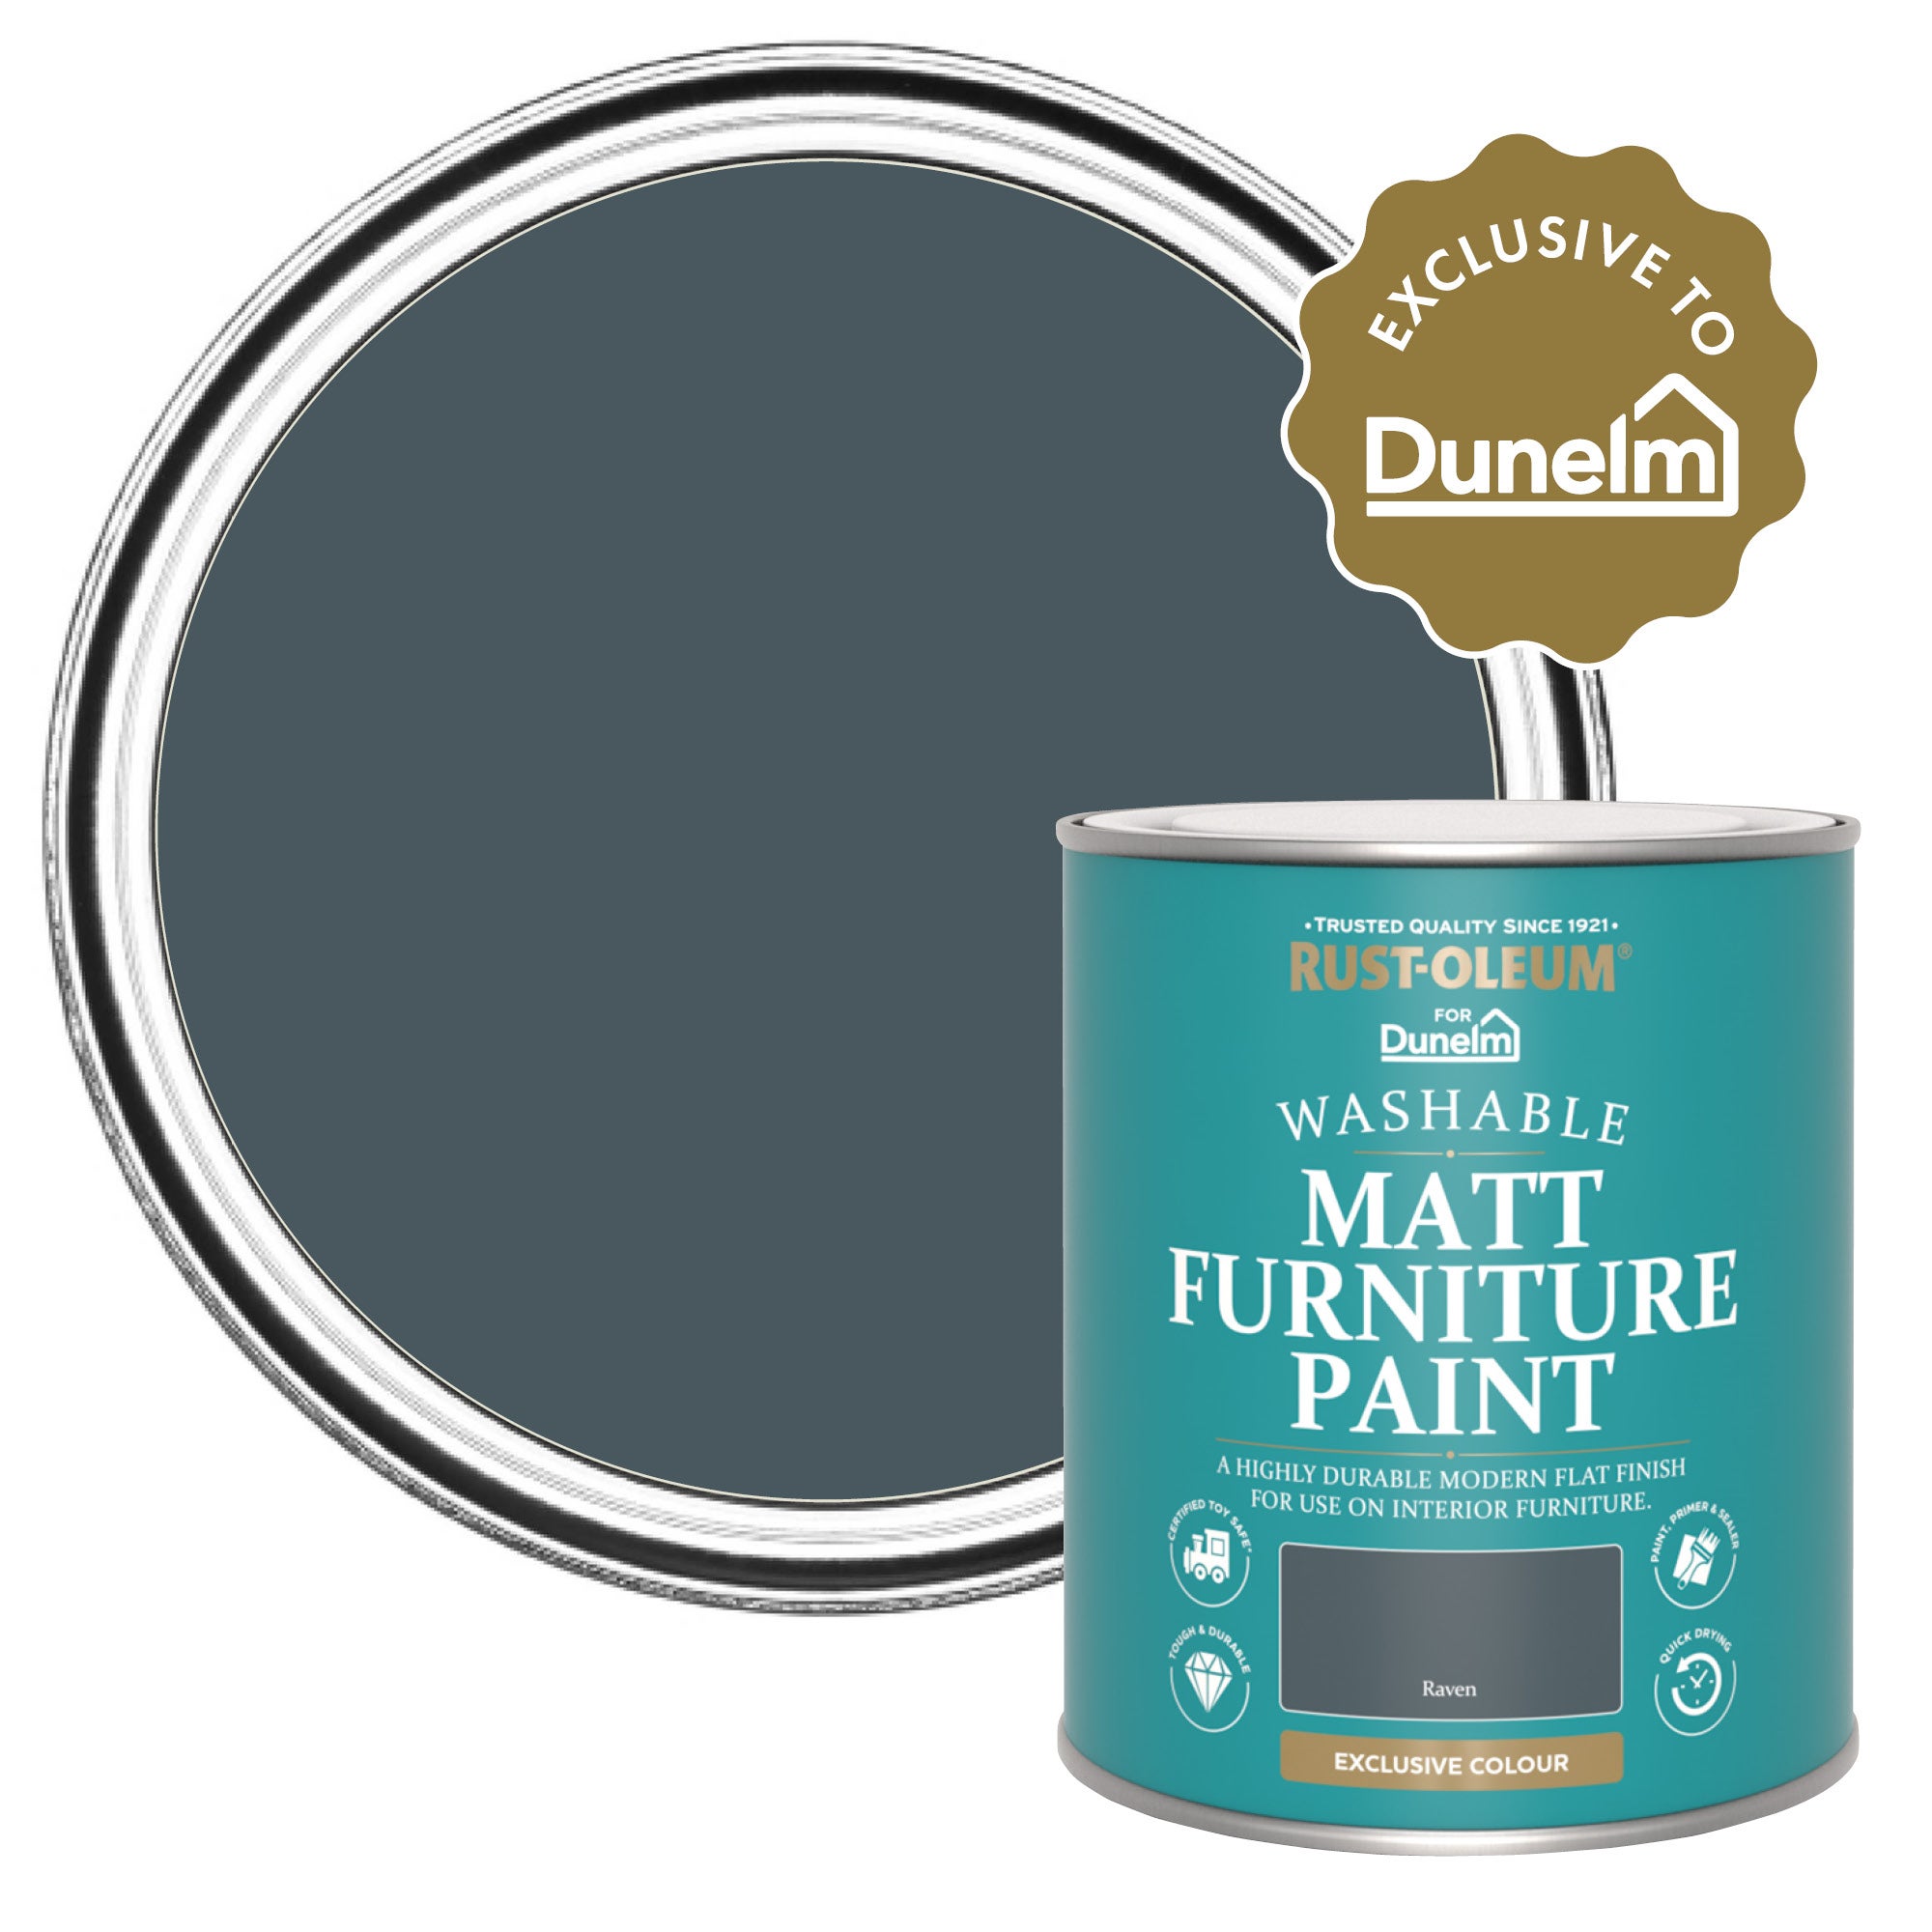 RustOleum X Dunelm Exclusive Raven Matt Furniture Paint